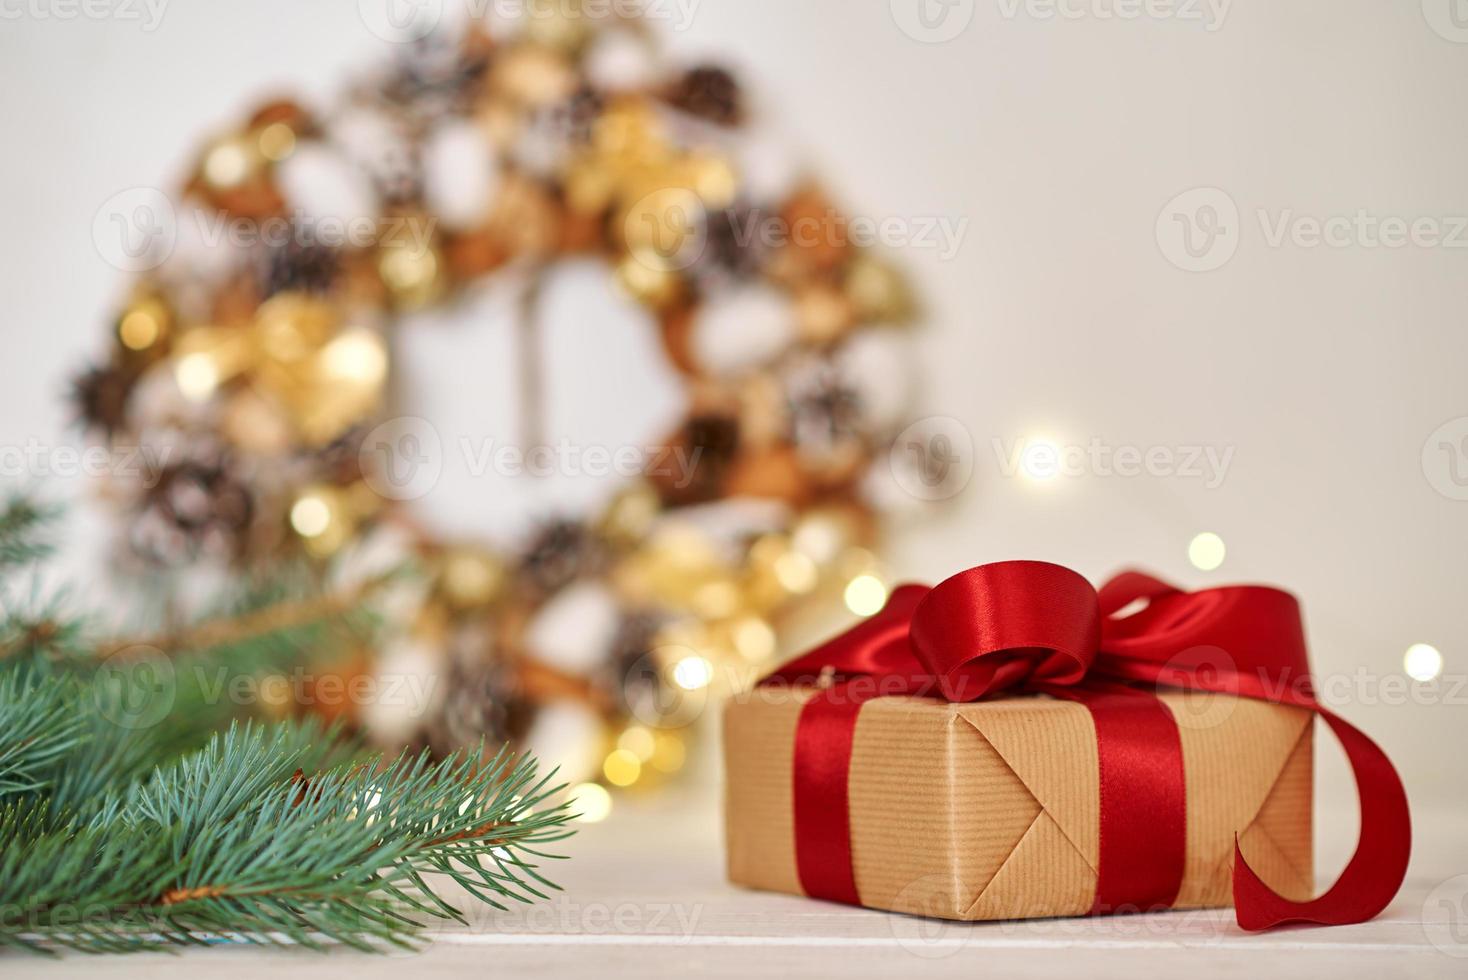 caja de regalo de navidad con cinta y adornos navideños foto